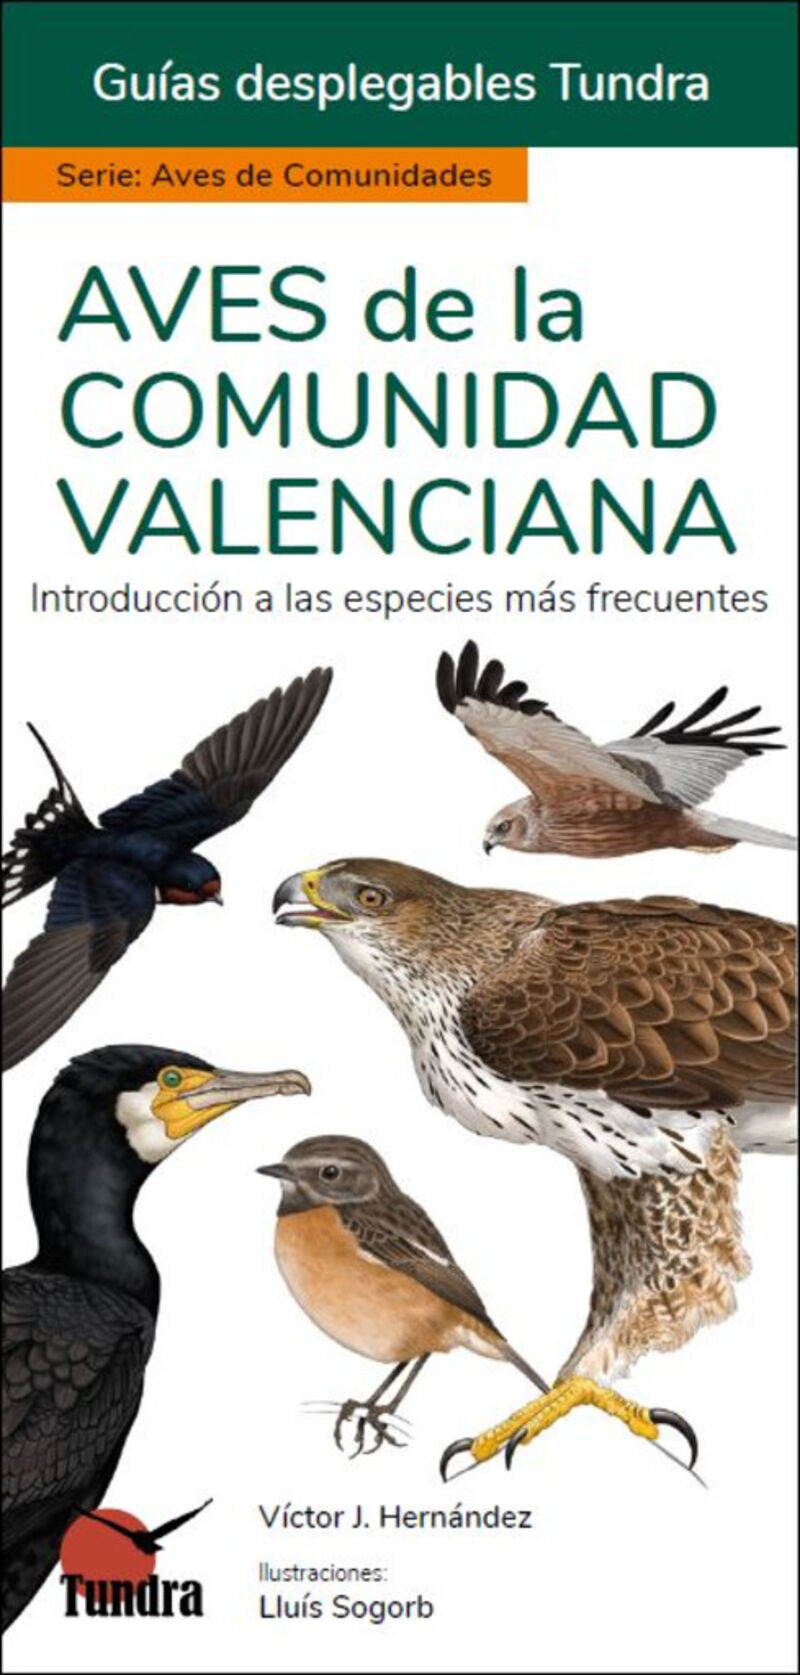 aves de la comunidad valenciana - guias desplegables - Victor J. Hernandez